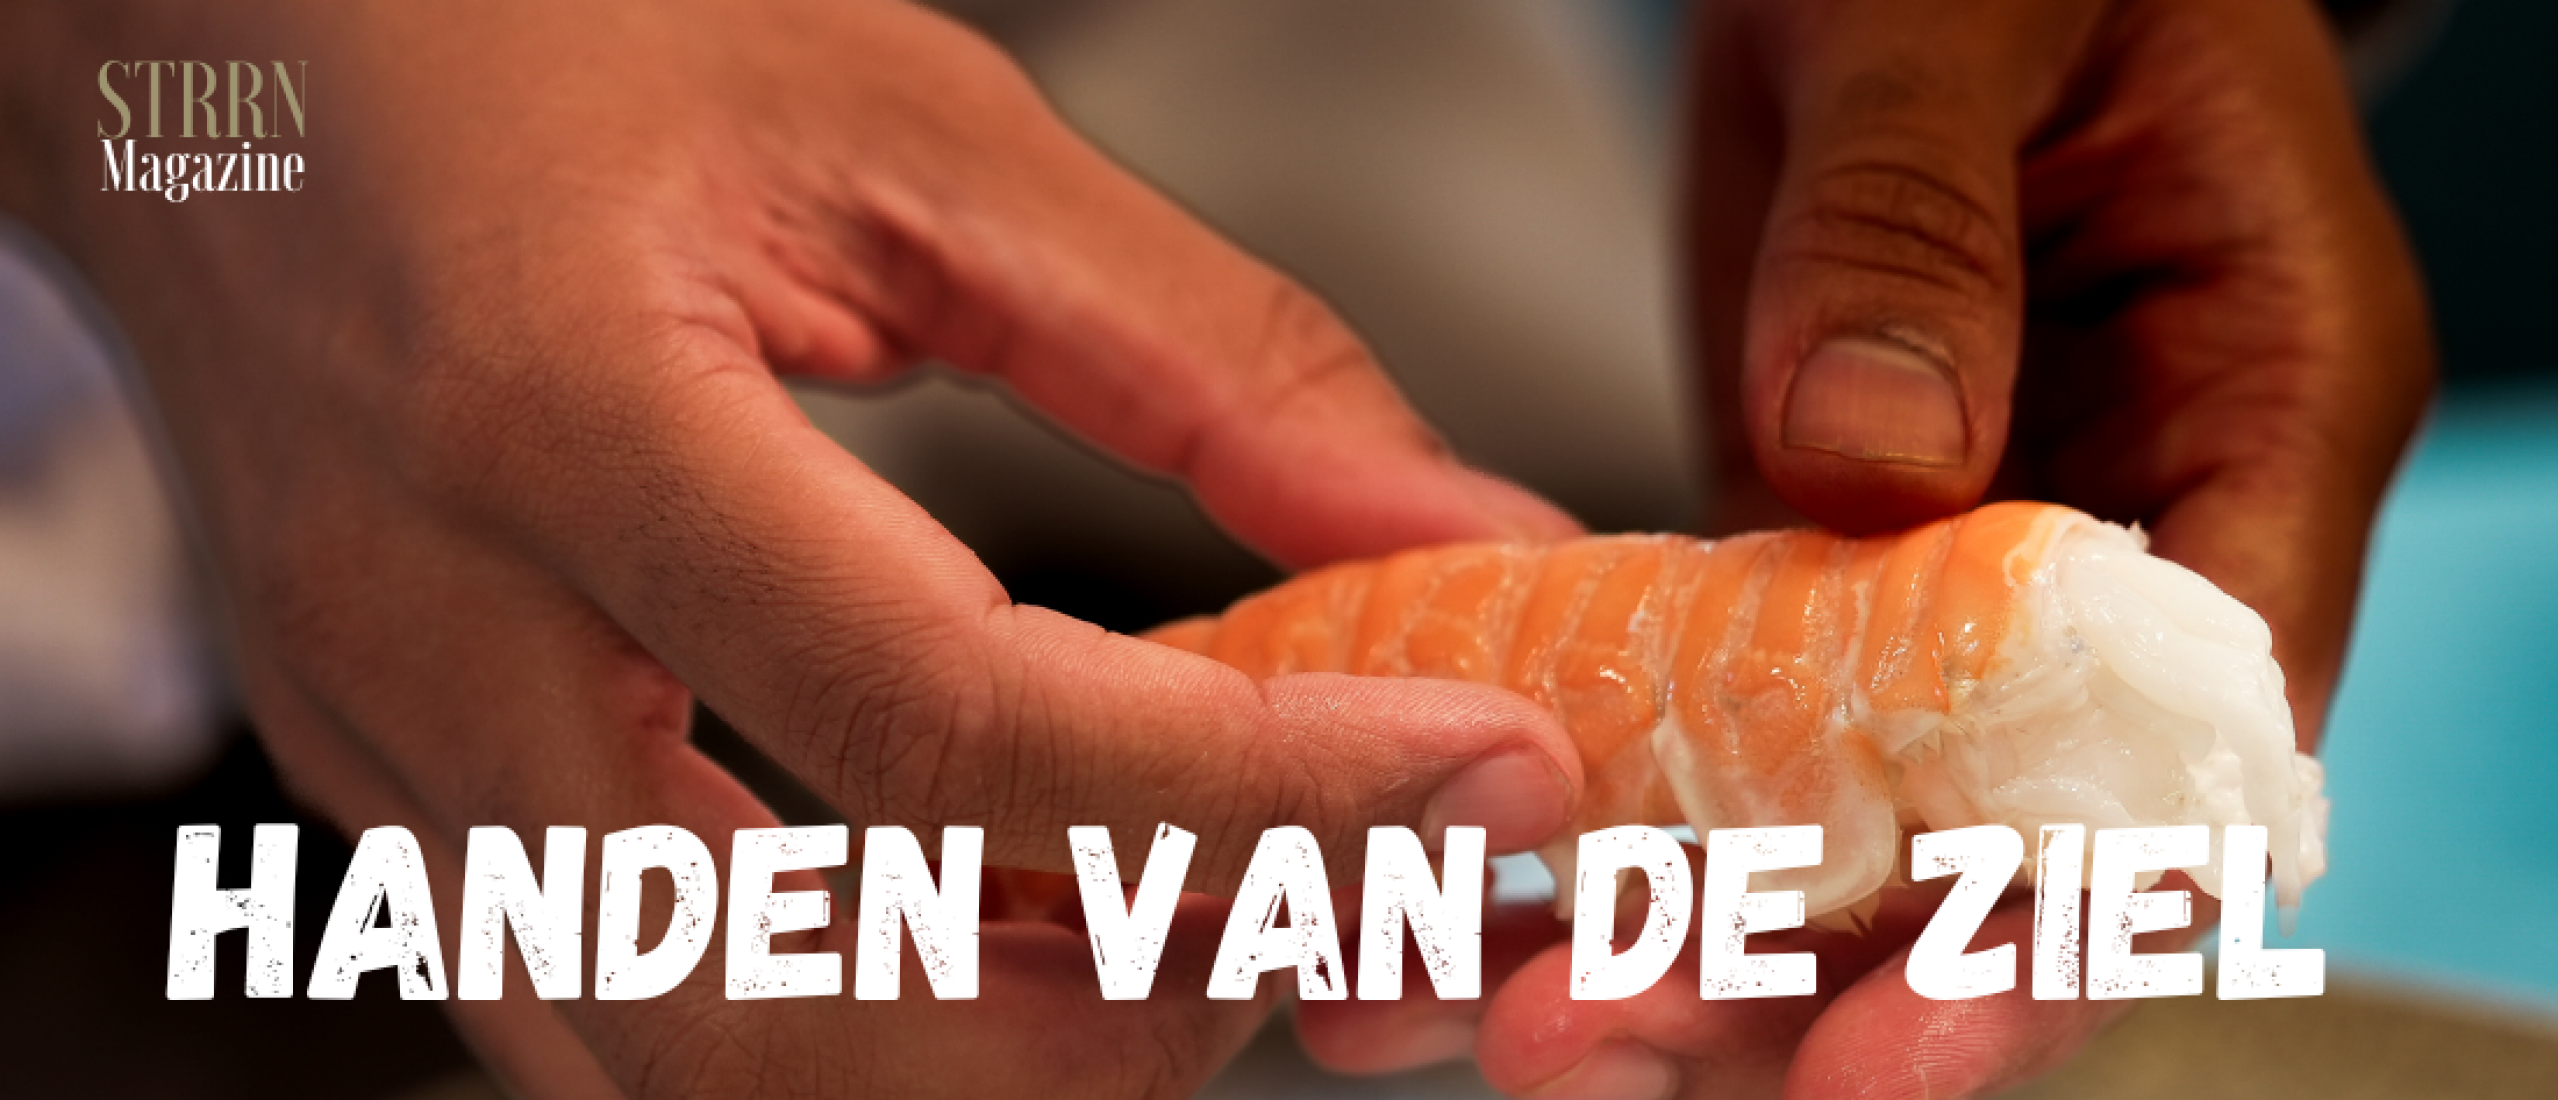 Handen van de ziel - met Jurgen van der Zalm chef-kok Vinkeles** Amsterdam